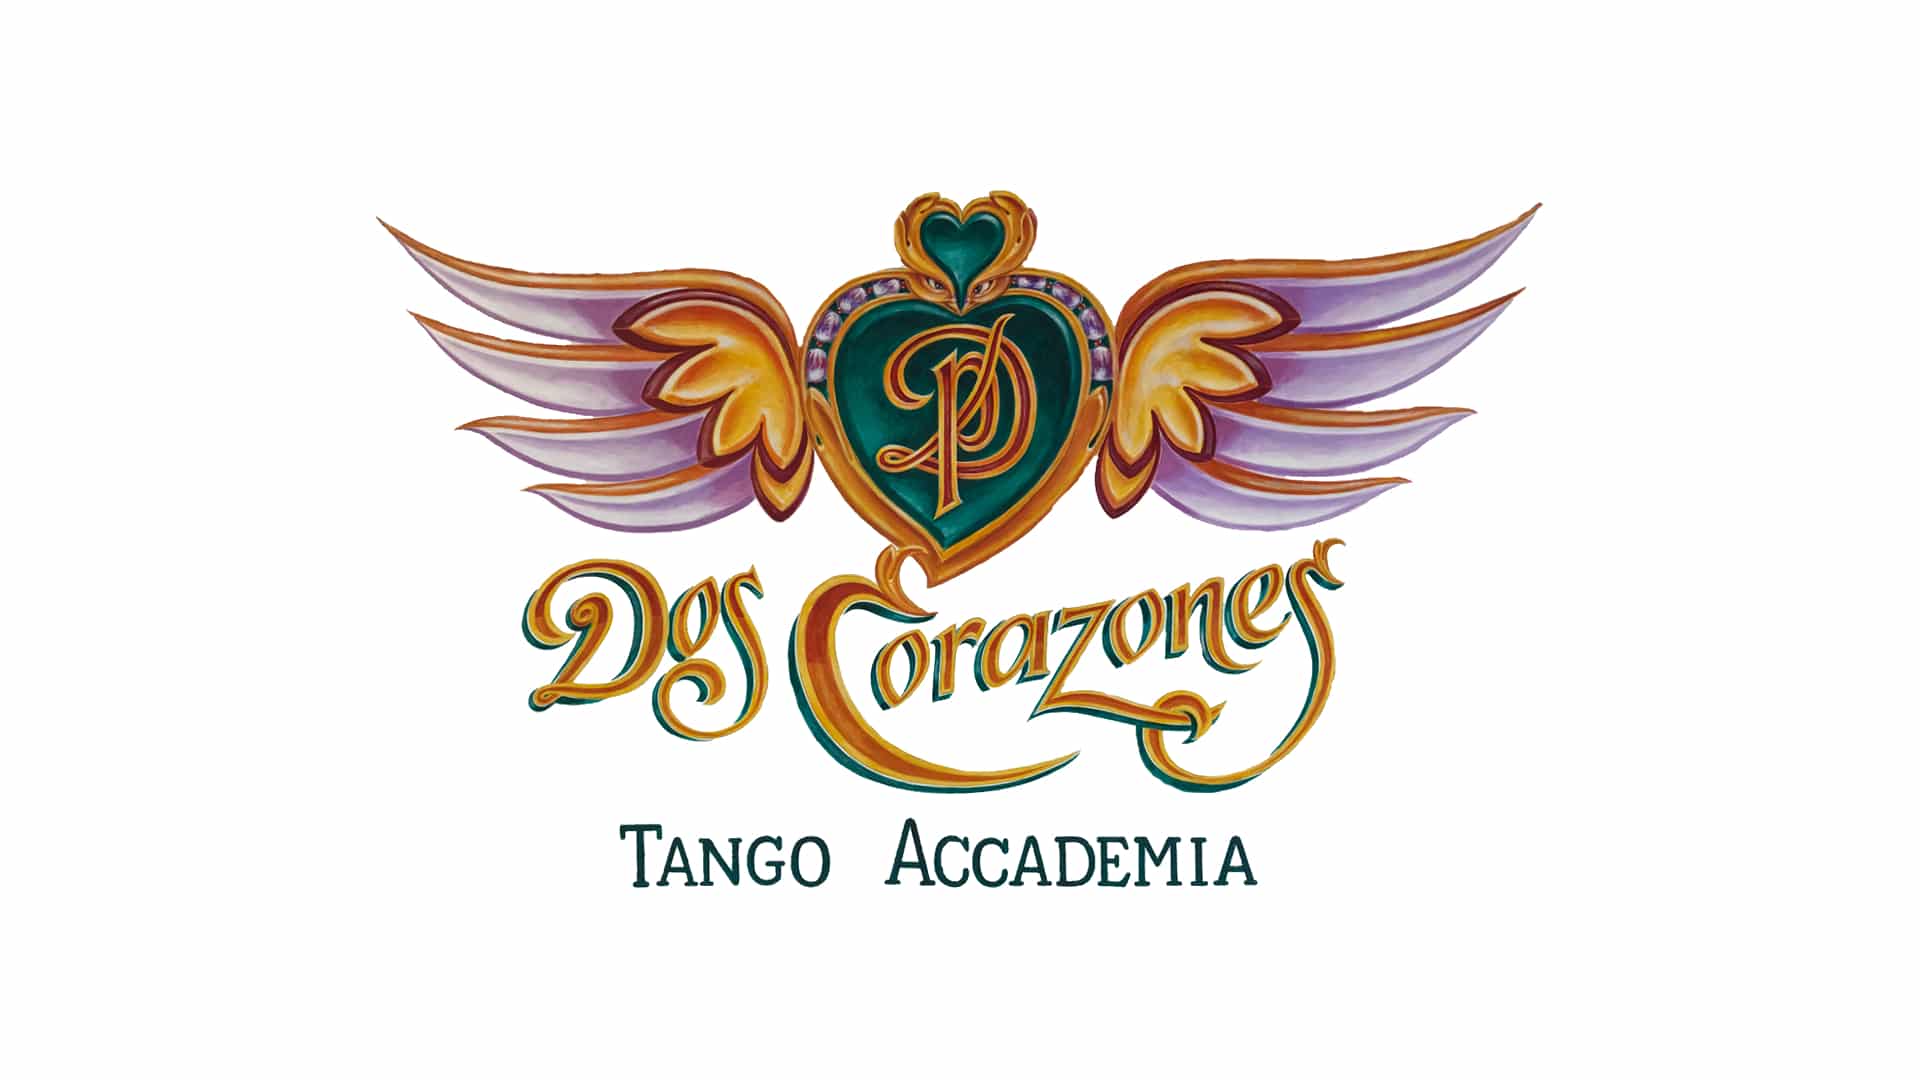 2 Corazones Tango Accademia